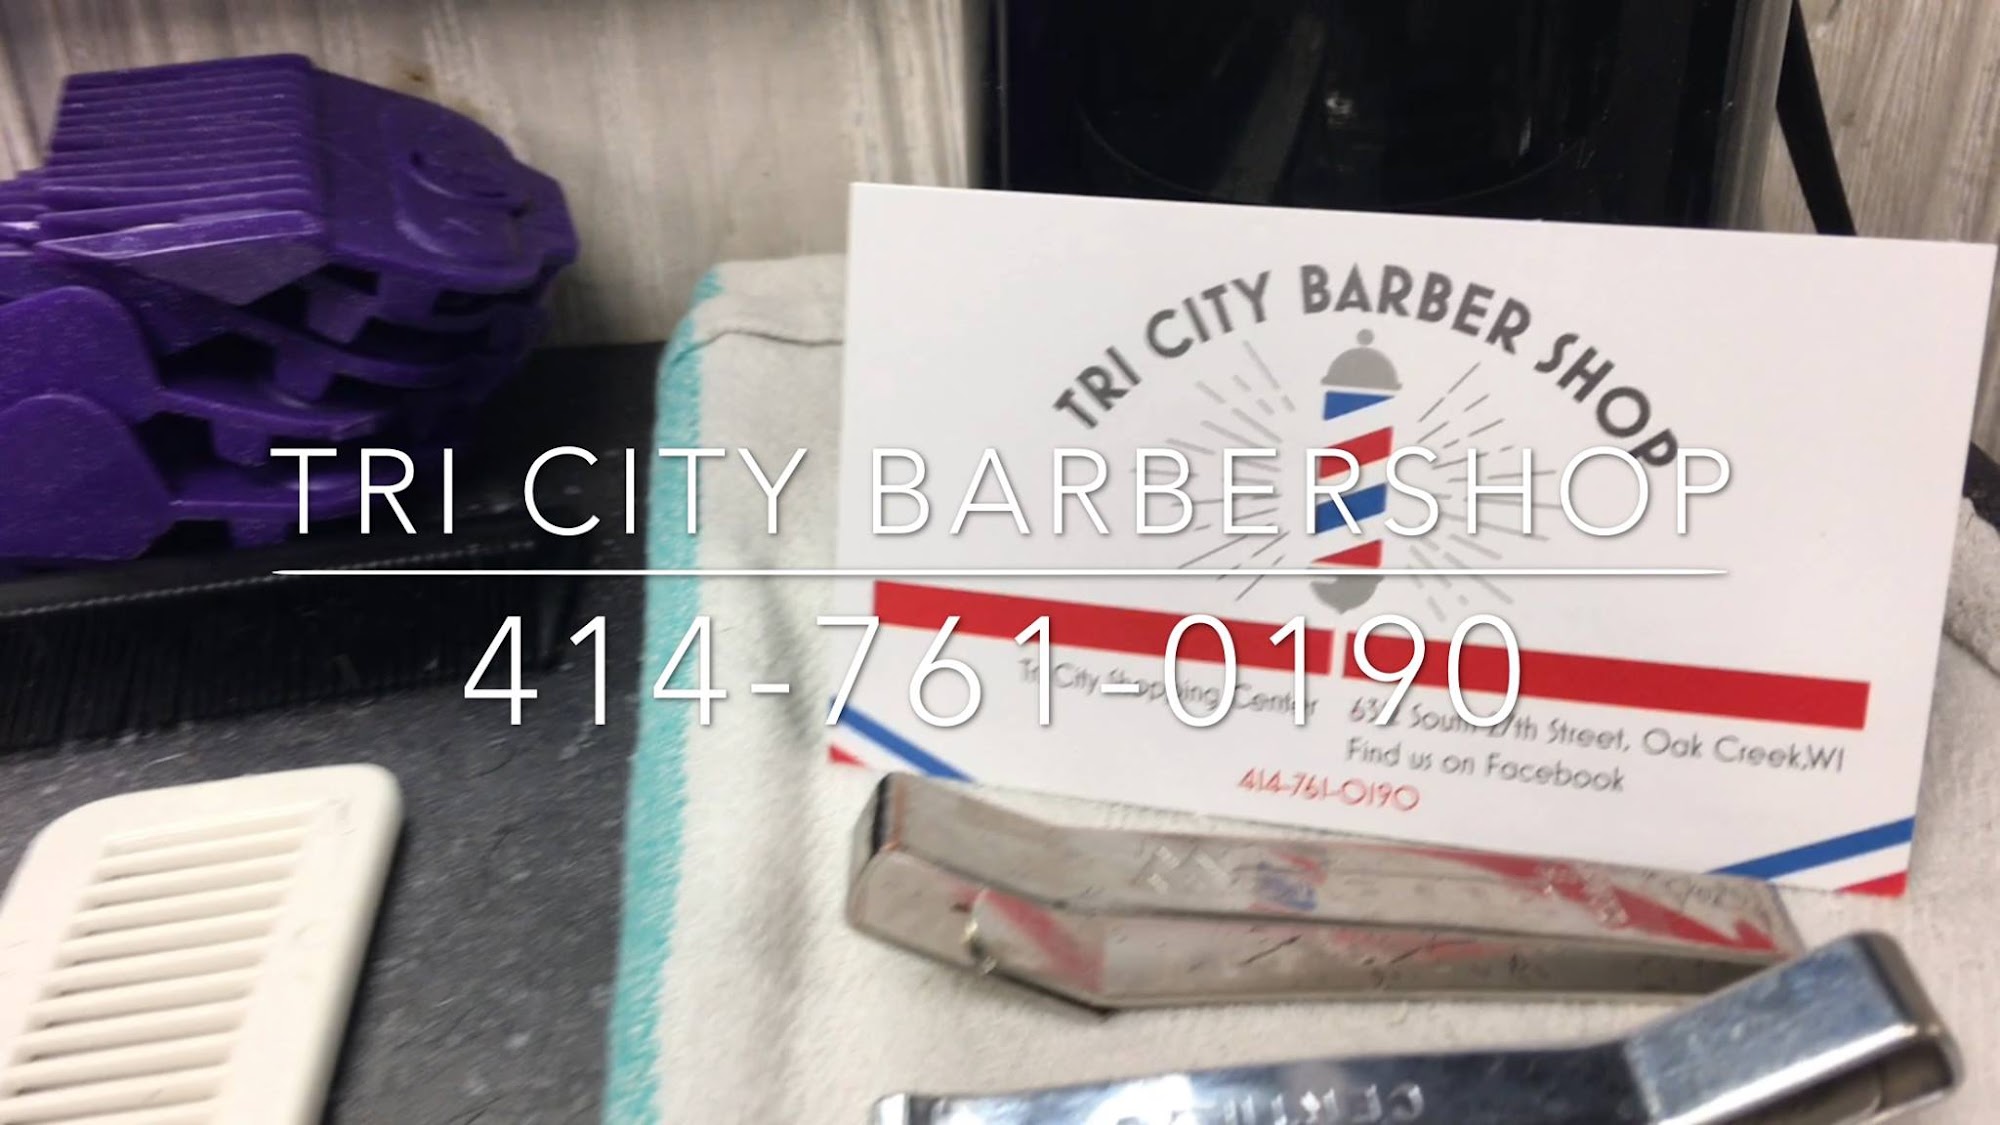 Tri-City Barber Shop